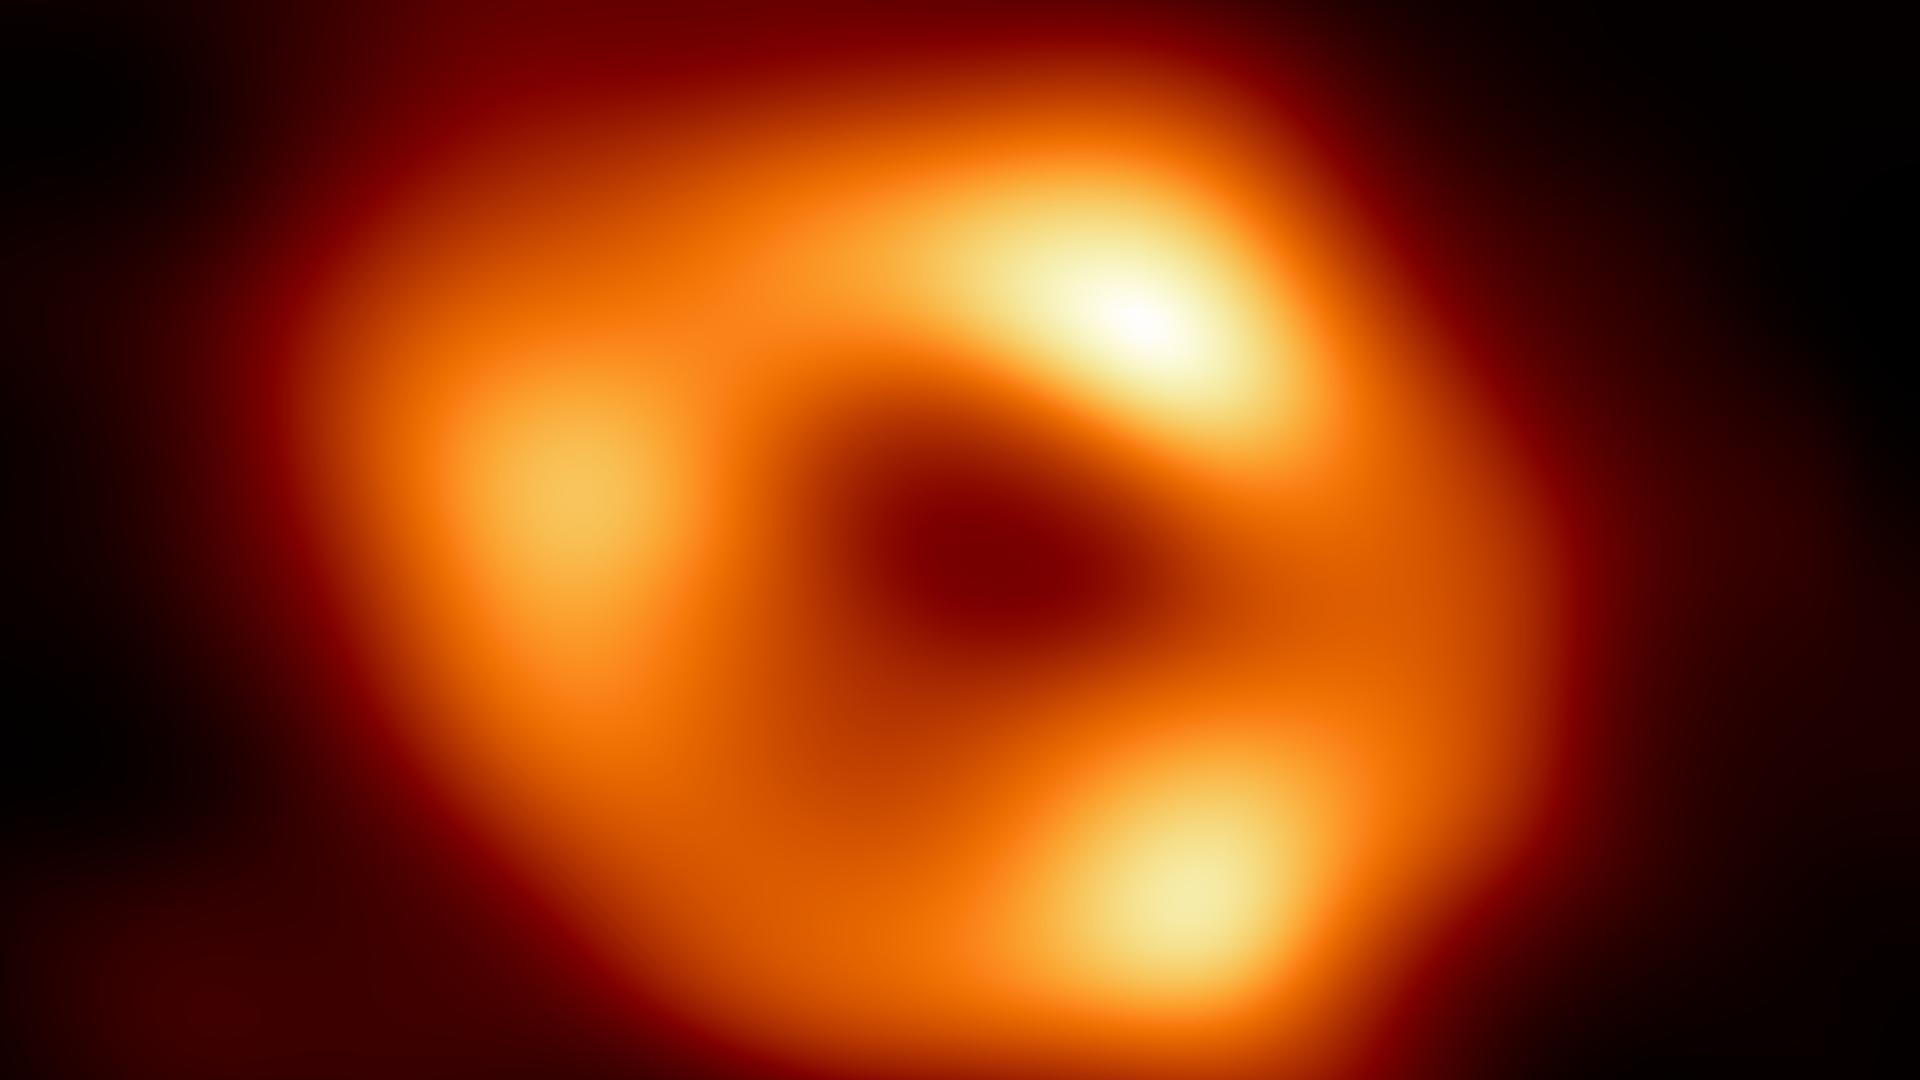 Diese Abbildung zeigt zum ersten Mal Sgr A*, das supermassereiche schwarze Loch im Zentrum unserer Galaxie.